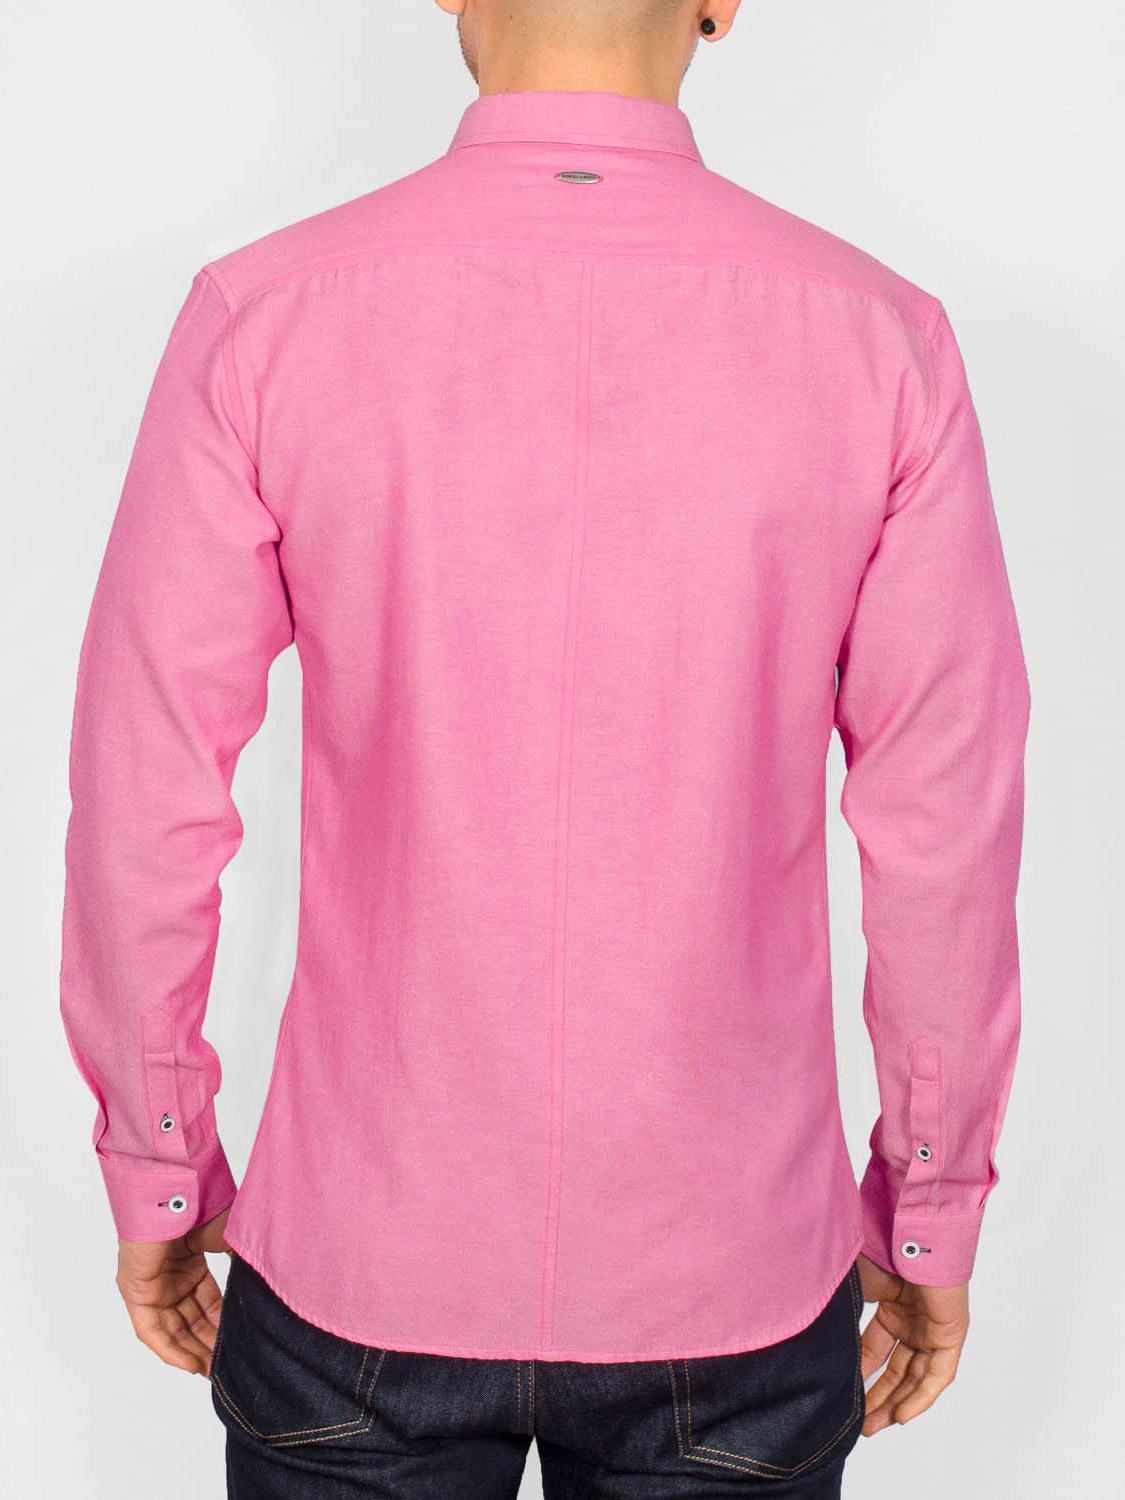 Aland Shirt Hot Pink